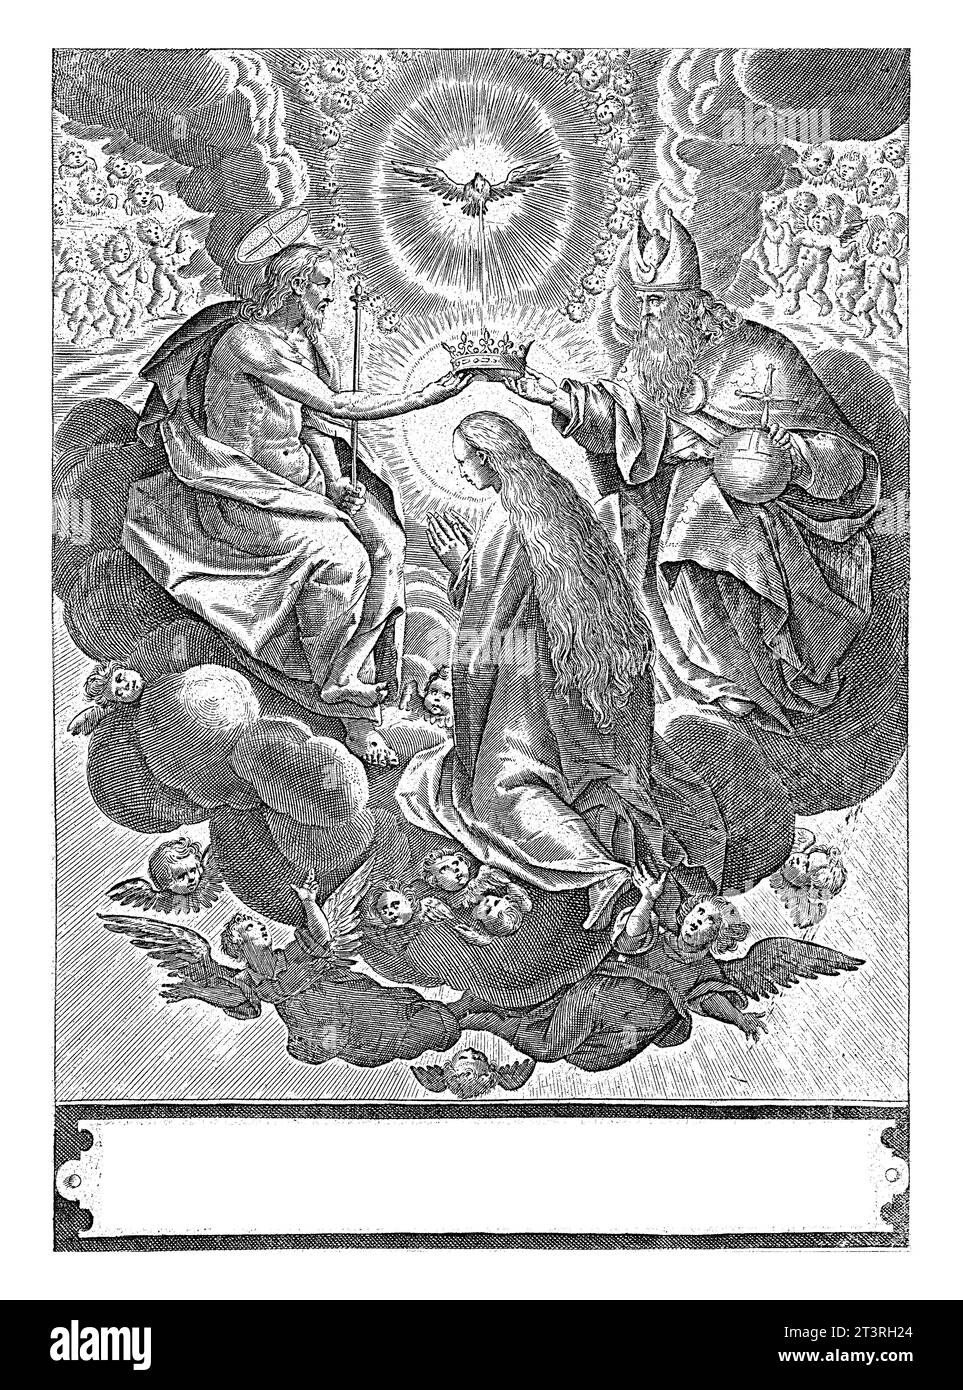 Incoronazione di Maria, Adriaen Collaert, dopo Jan van der Straet, 1587 - 1591 la Vergine Maria si inginocchiò. È incoronata in cielo da Dio padre e Cr Foto Stock